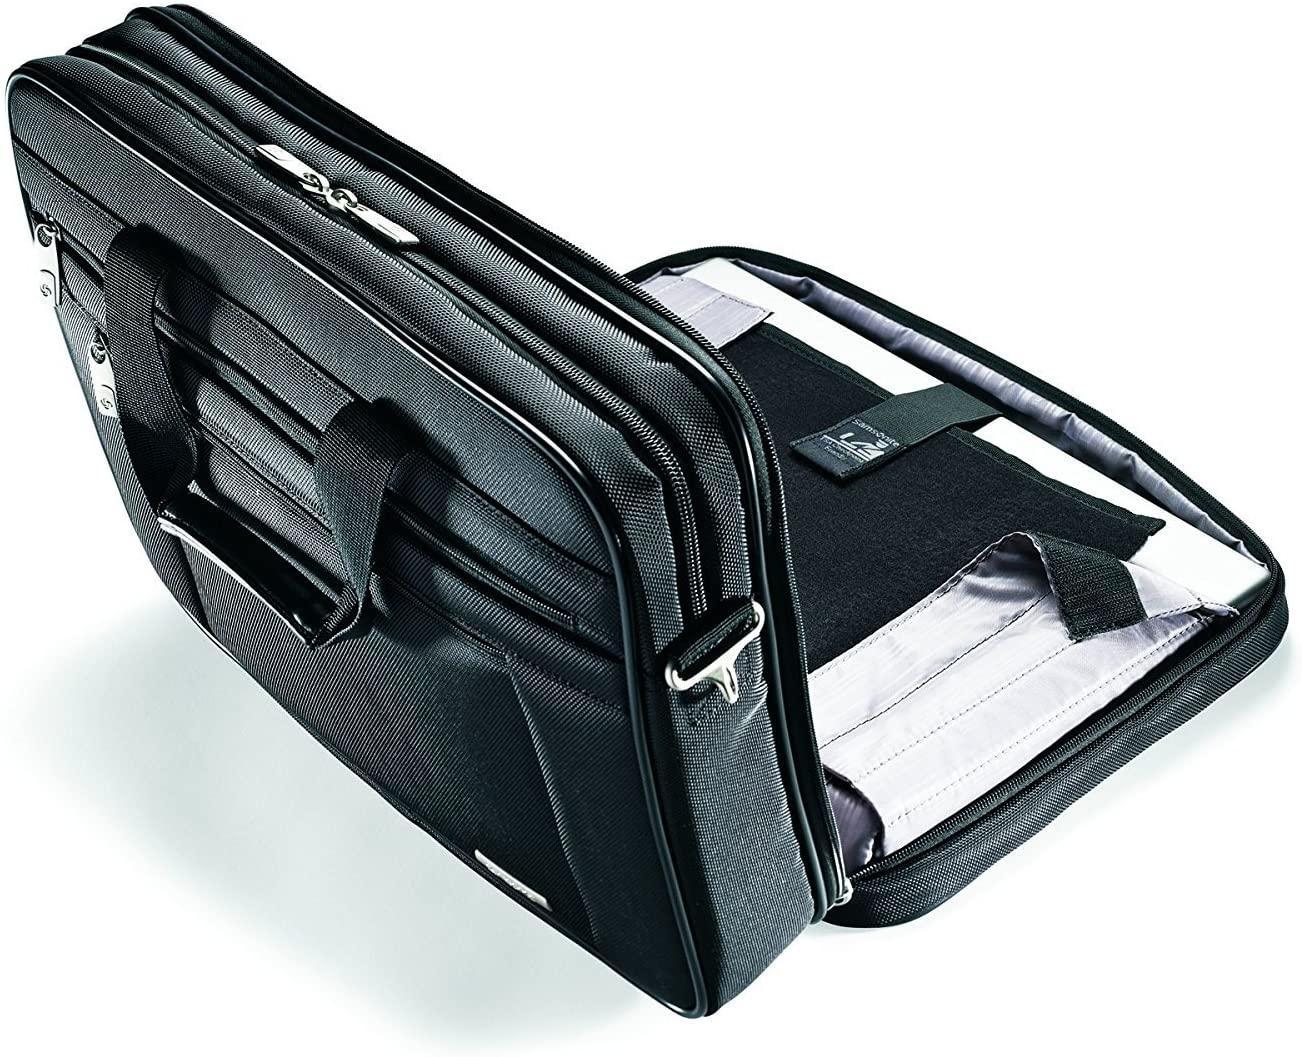 Samsonite Classic Business Laptop Bag - 16"